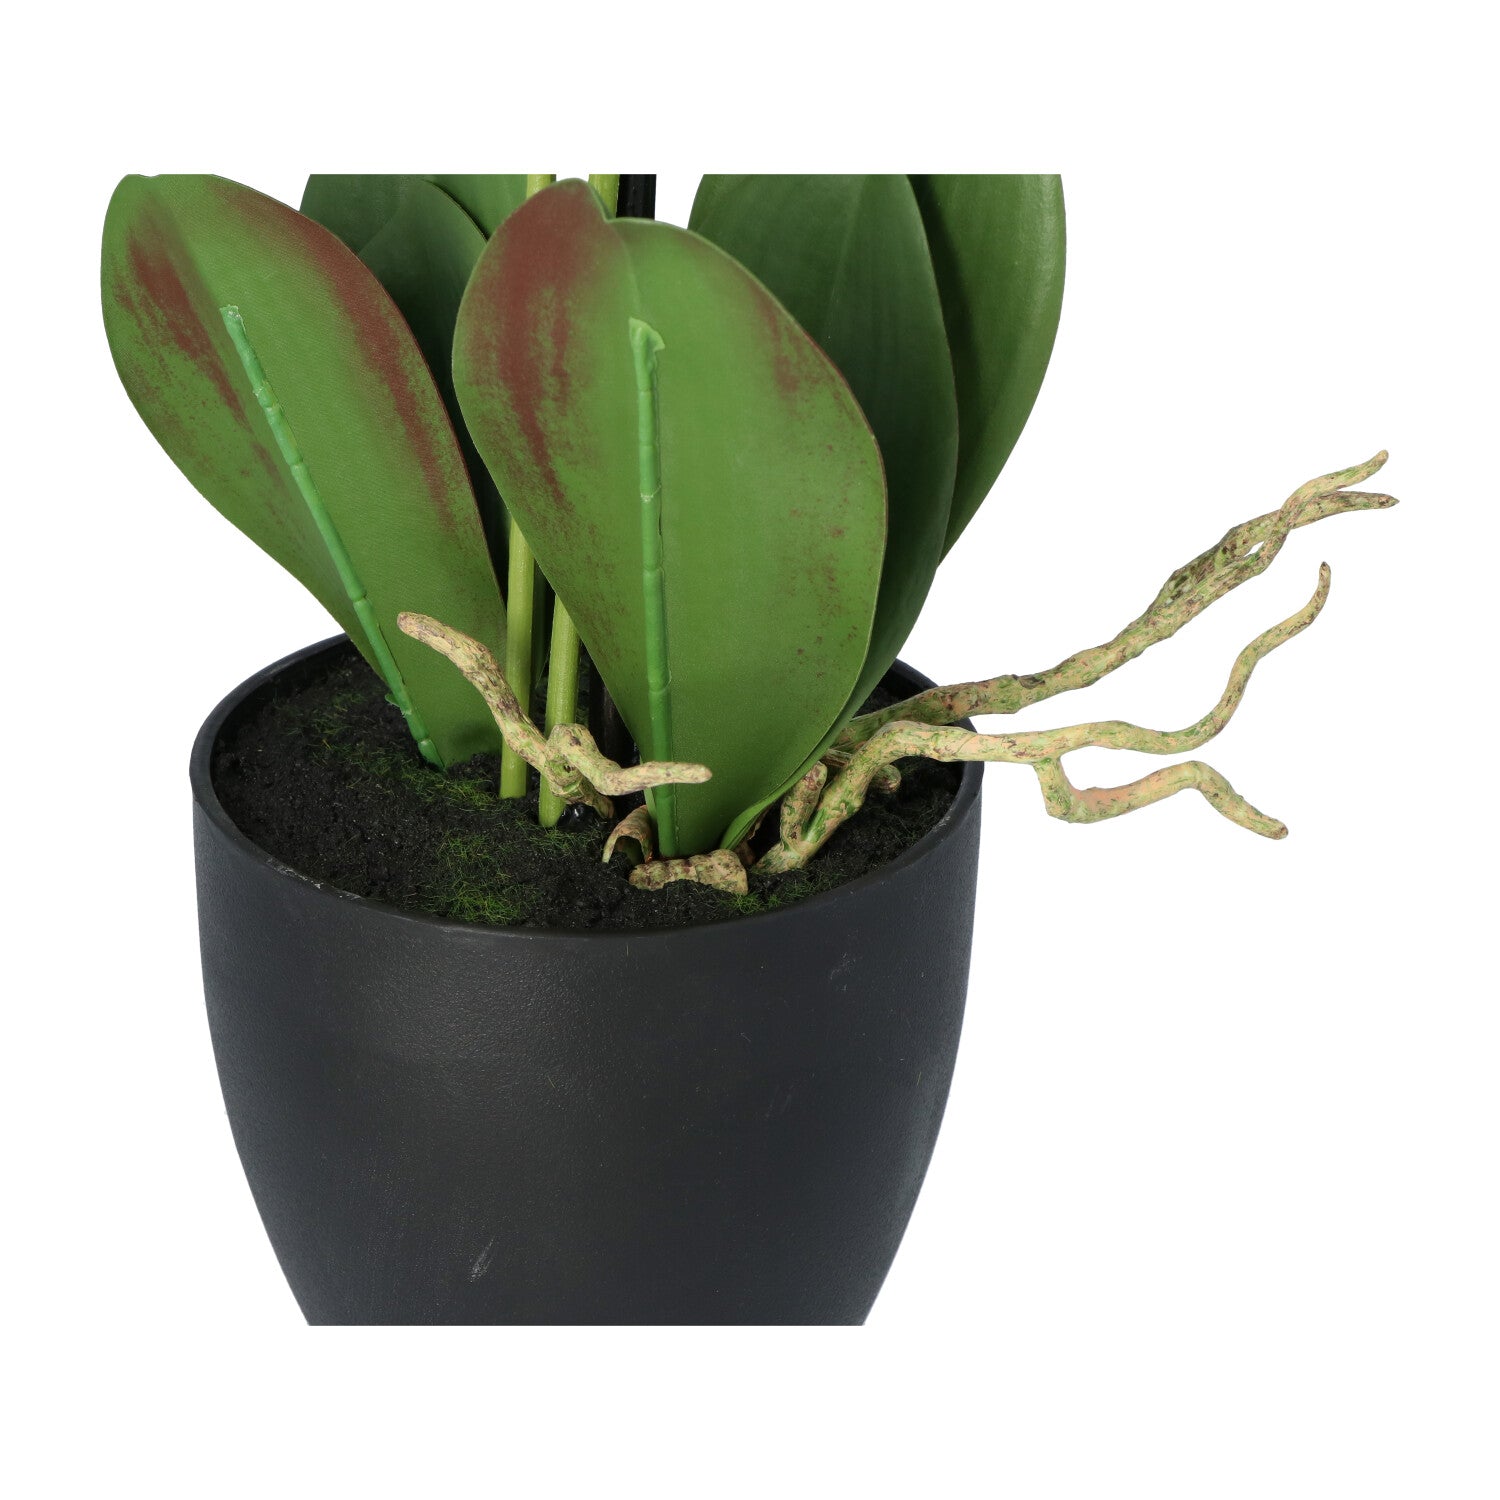 Kopu® Kunstbloem Orchidee 65 cm Wit met zwarte Pot - Phalenopsis